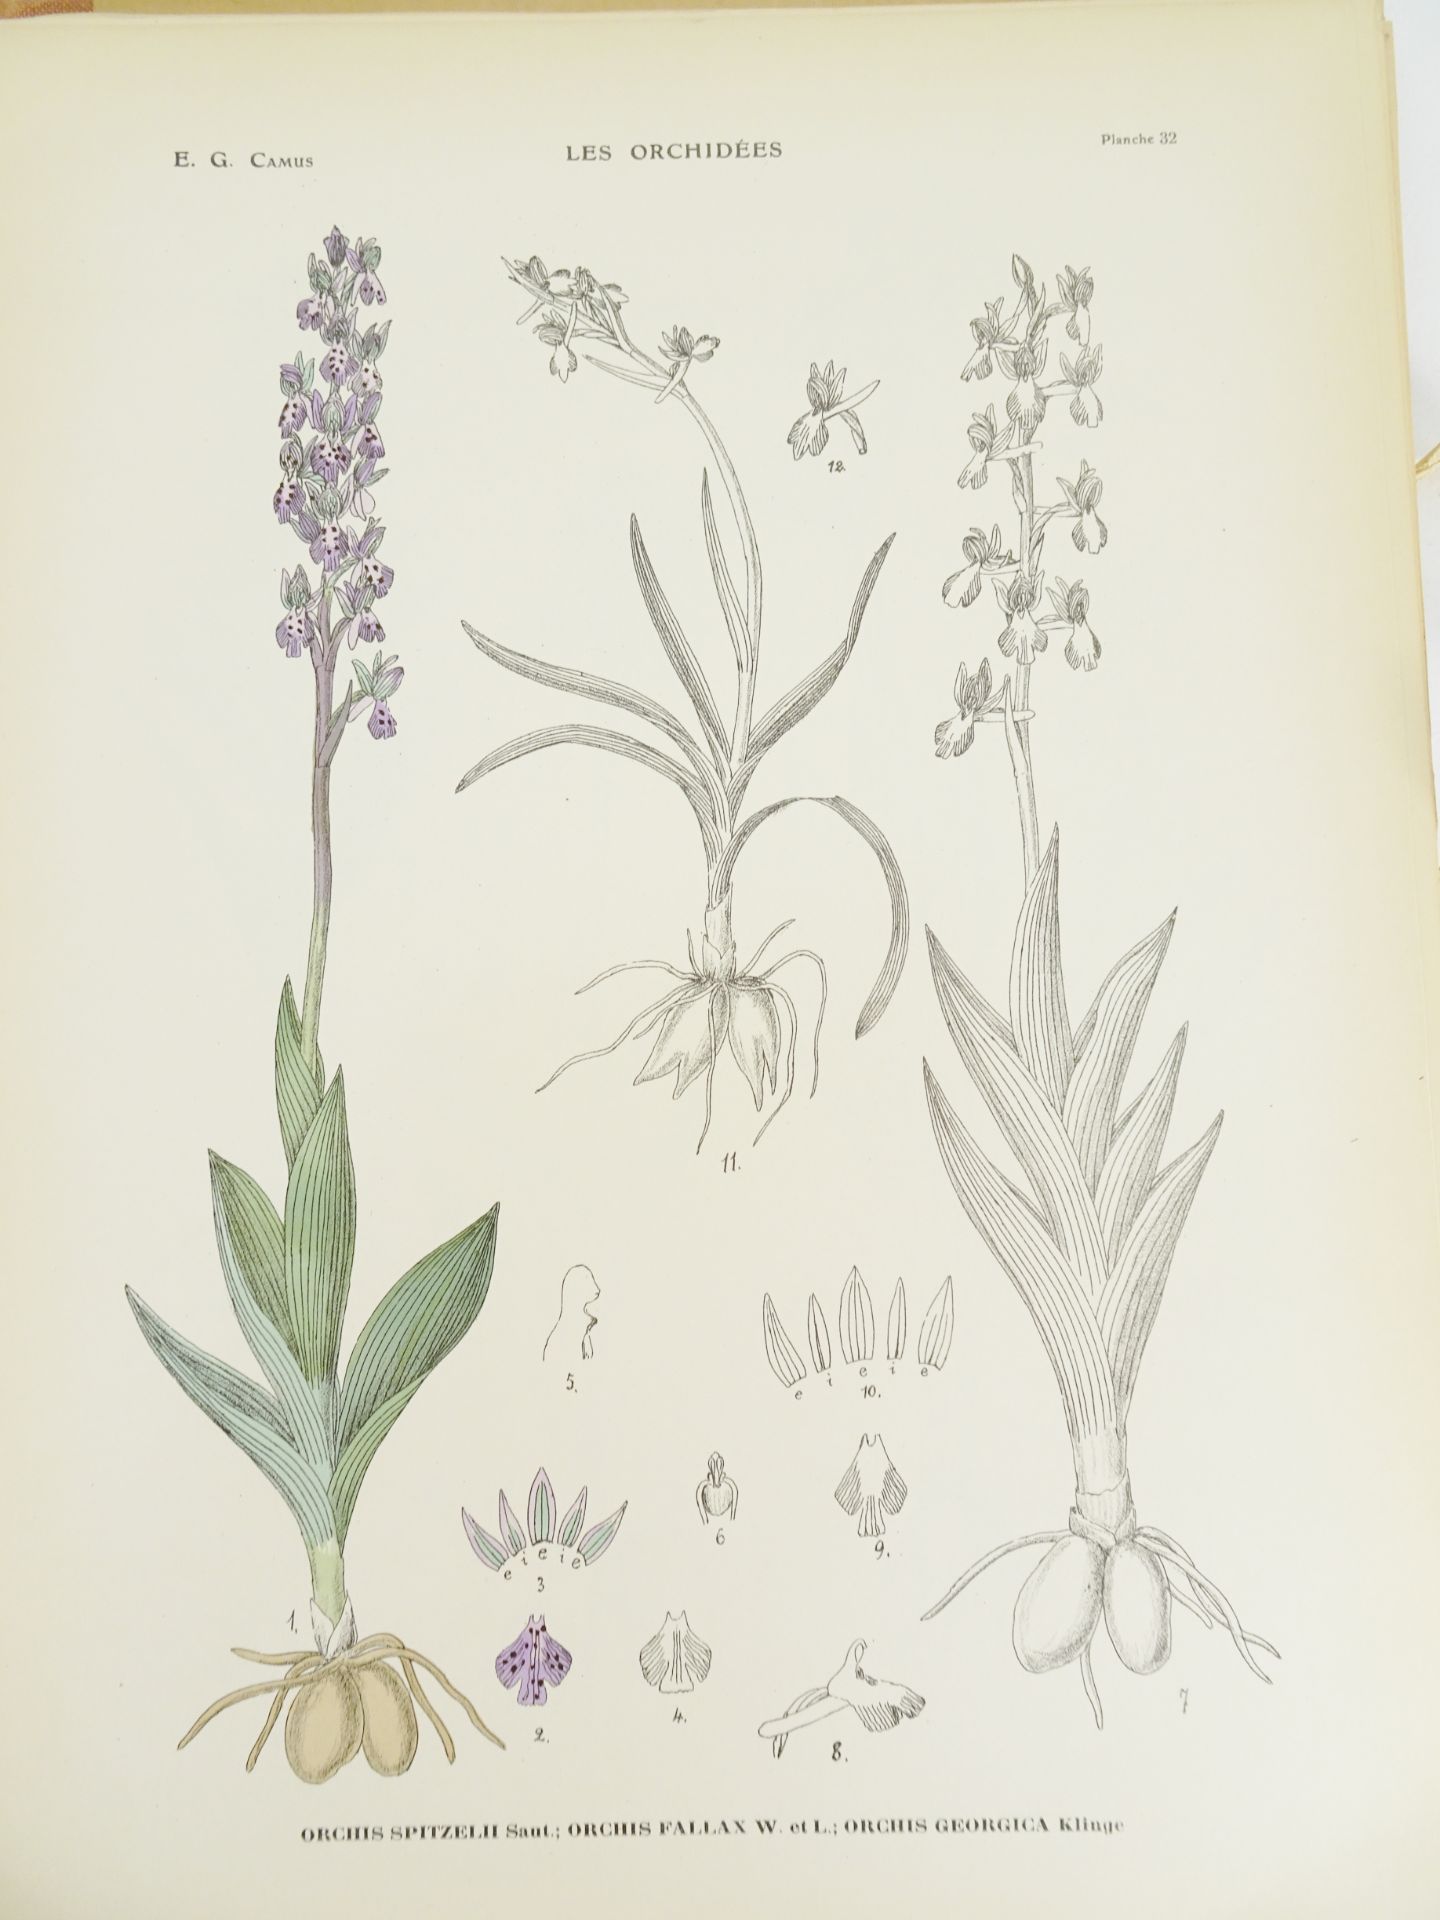 |Orchidaceae| Camus E.G., "Iconographie des Orchidées d'Europe et du Bassin Méditerranéen", 1921 - Bild 8 aus 14